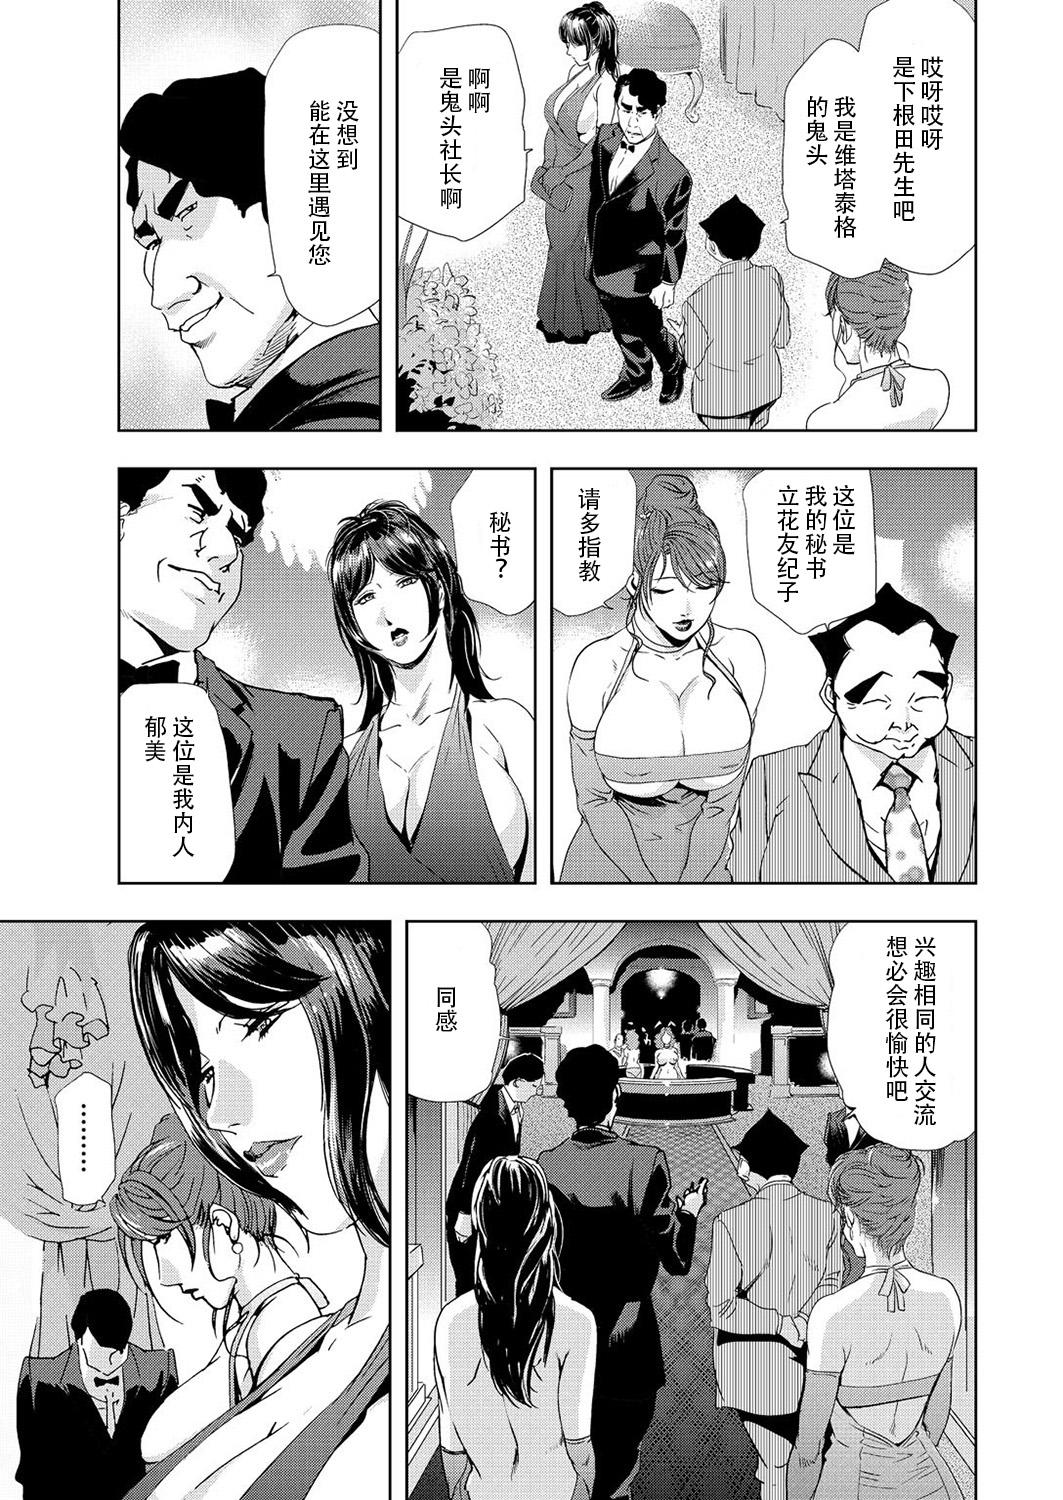 Paja Nikuhisyo Yukiko 6 Girlnextdoor - Page 7